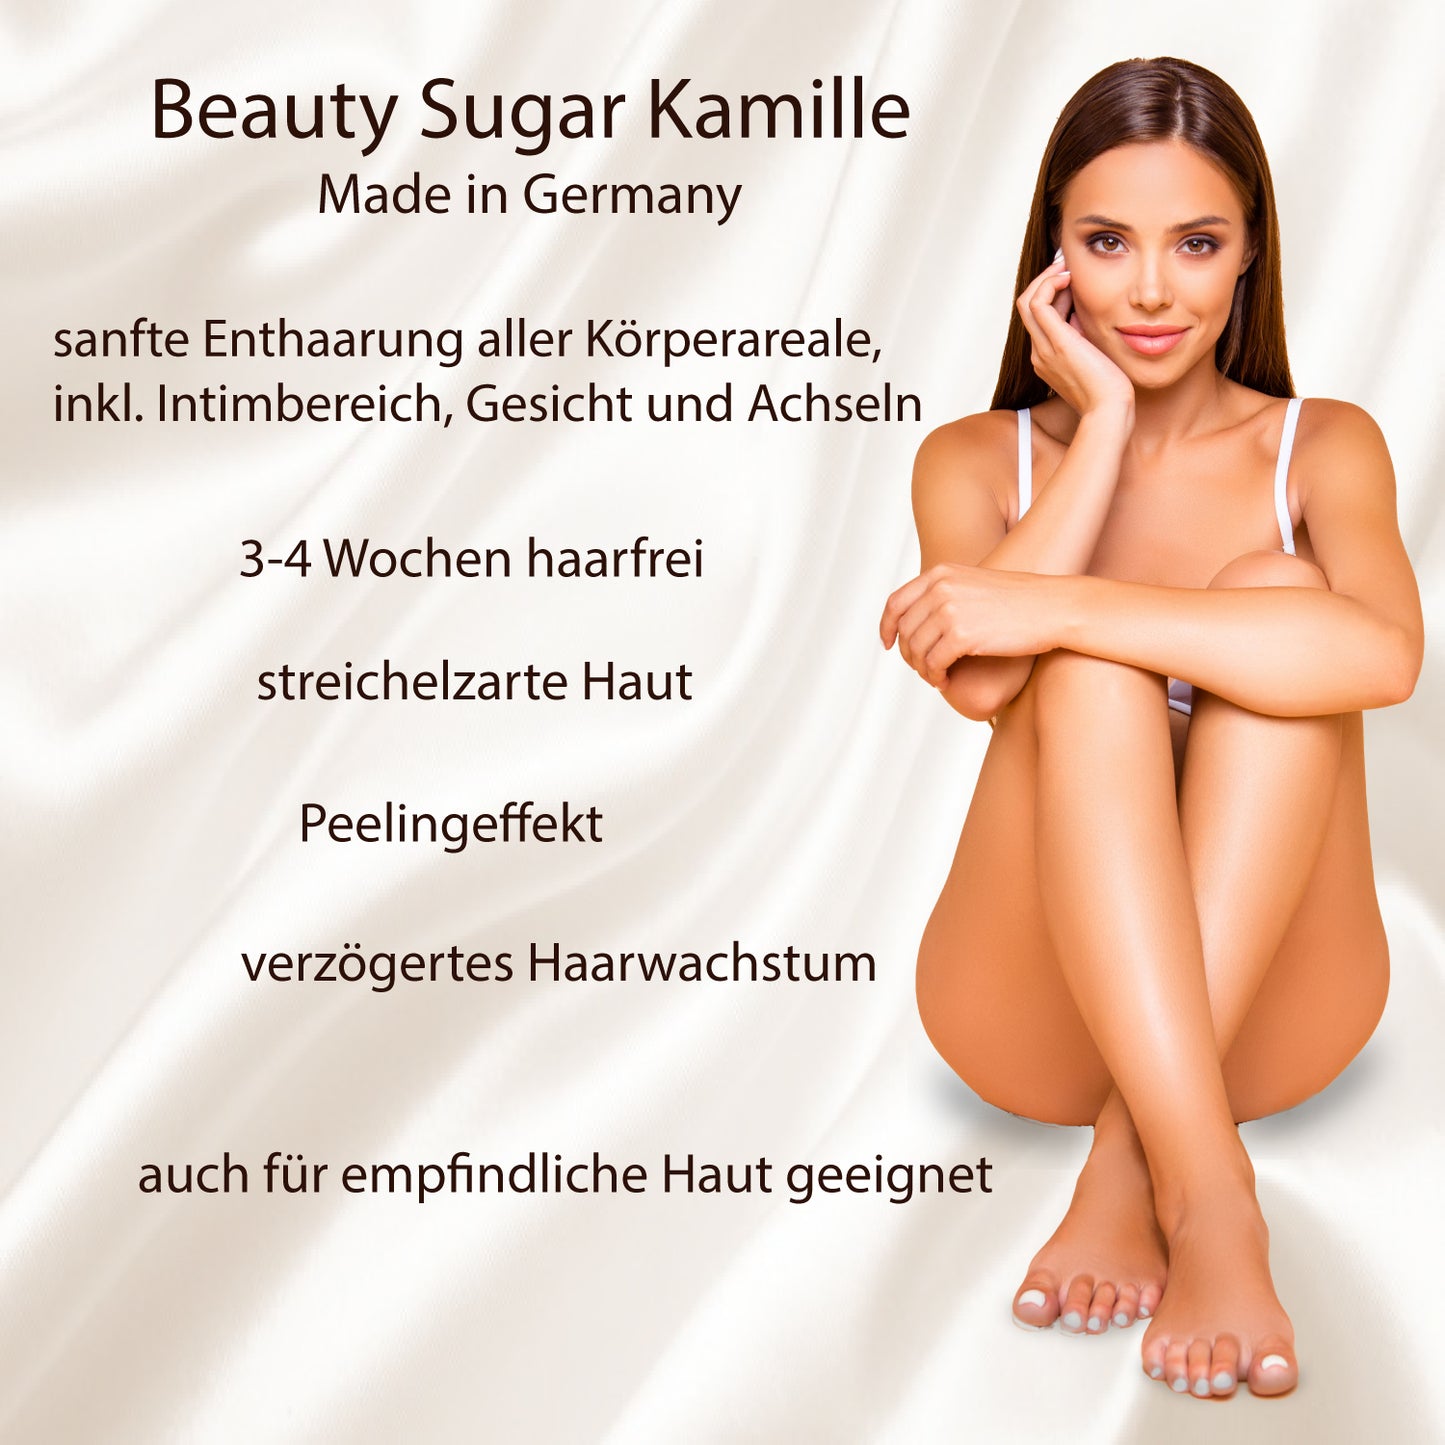 Spare über 20 % - Beauty Sugar "Kamille" - Vorteilspaket - 4 Dosen á 600g (2400g) Zuckerpaste EAN 4260523460316